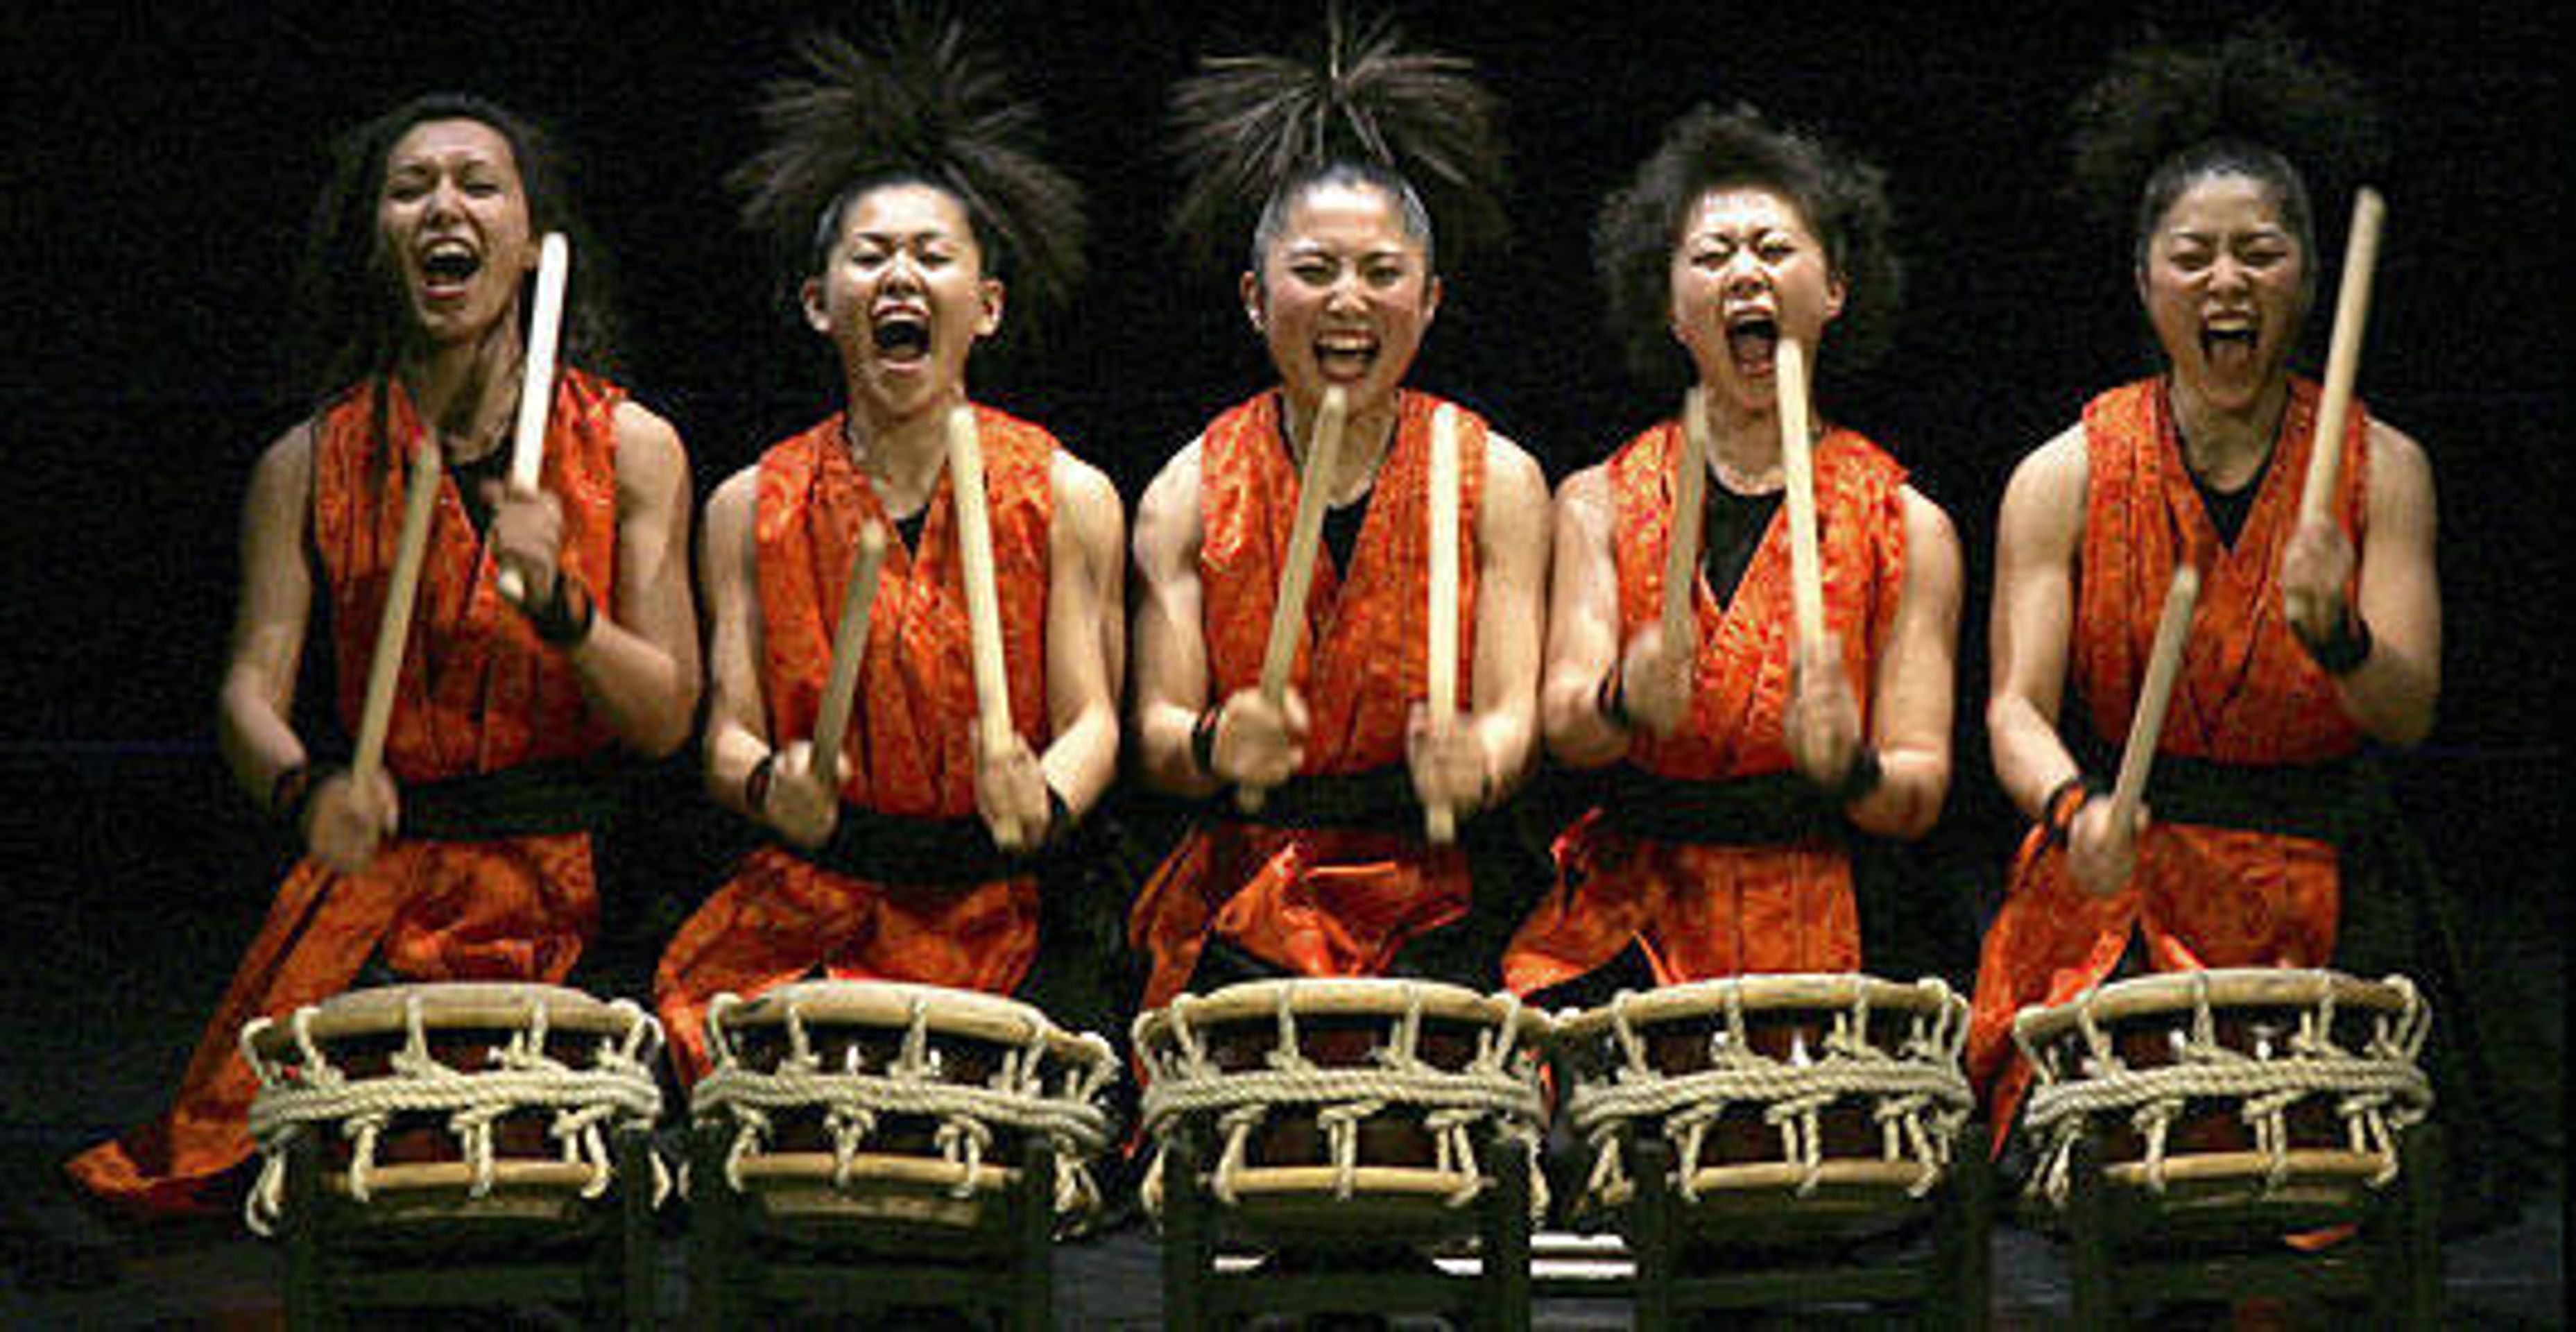 Mezi Yamato Drummers of Japan jsou i ženy - Show japonských bubeníků ve Snídani s Novou (2/4)